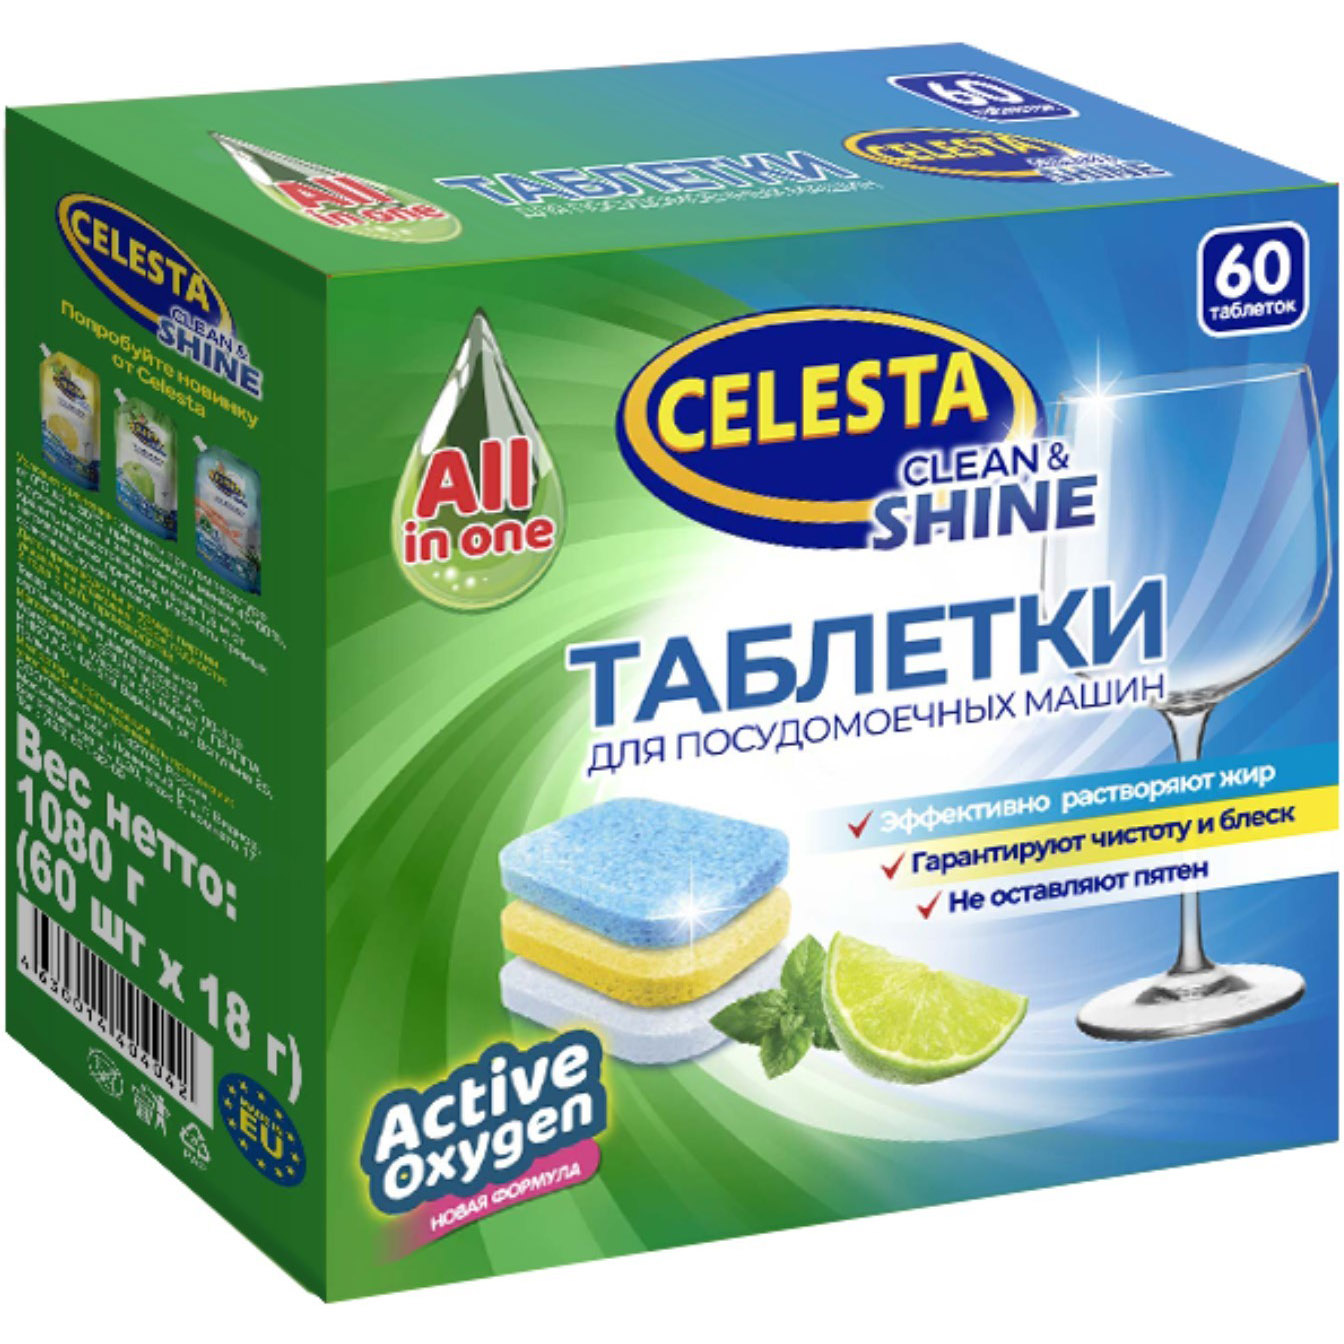 Таблетки для посудомоечных машин Celesta Clean & shine Трехслойные 60 шт laboratory katrin экологичные таблетки для посудомоечных машин clean ocean 35